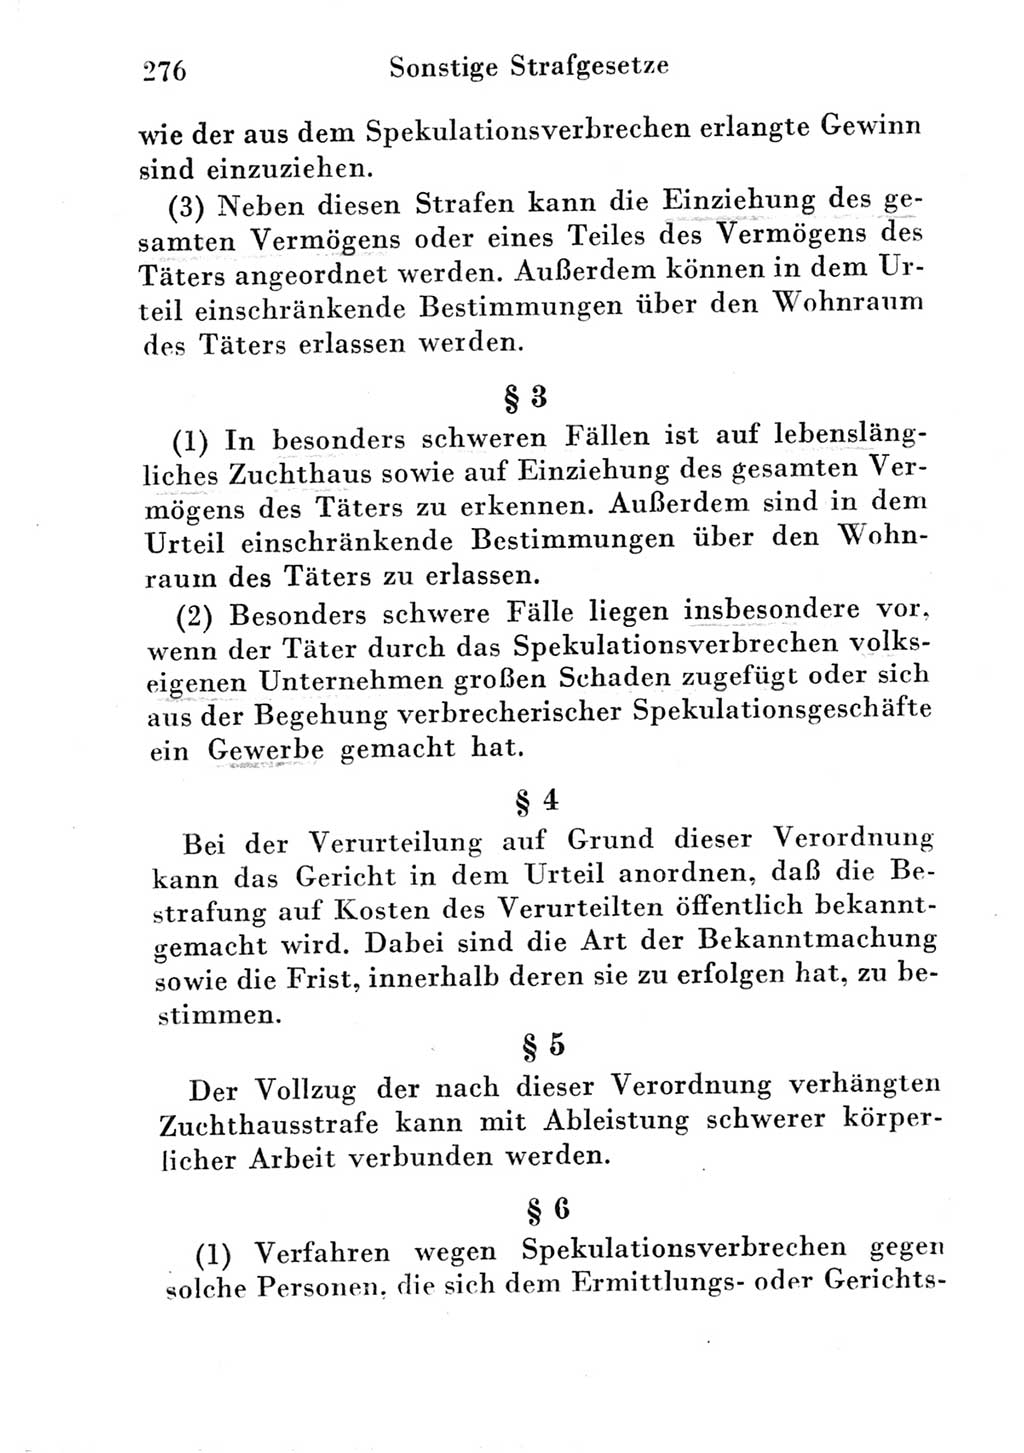 Strafgesetzbuch (StGB) und andere Strafgesetze [Deutsche Demokratische Republik (DDR)] 1951, Seite 276 (StGB Strafges. DDR 1951, S. 276)